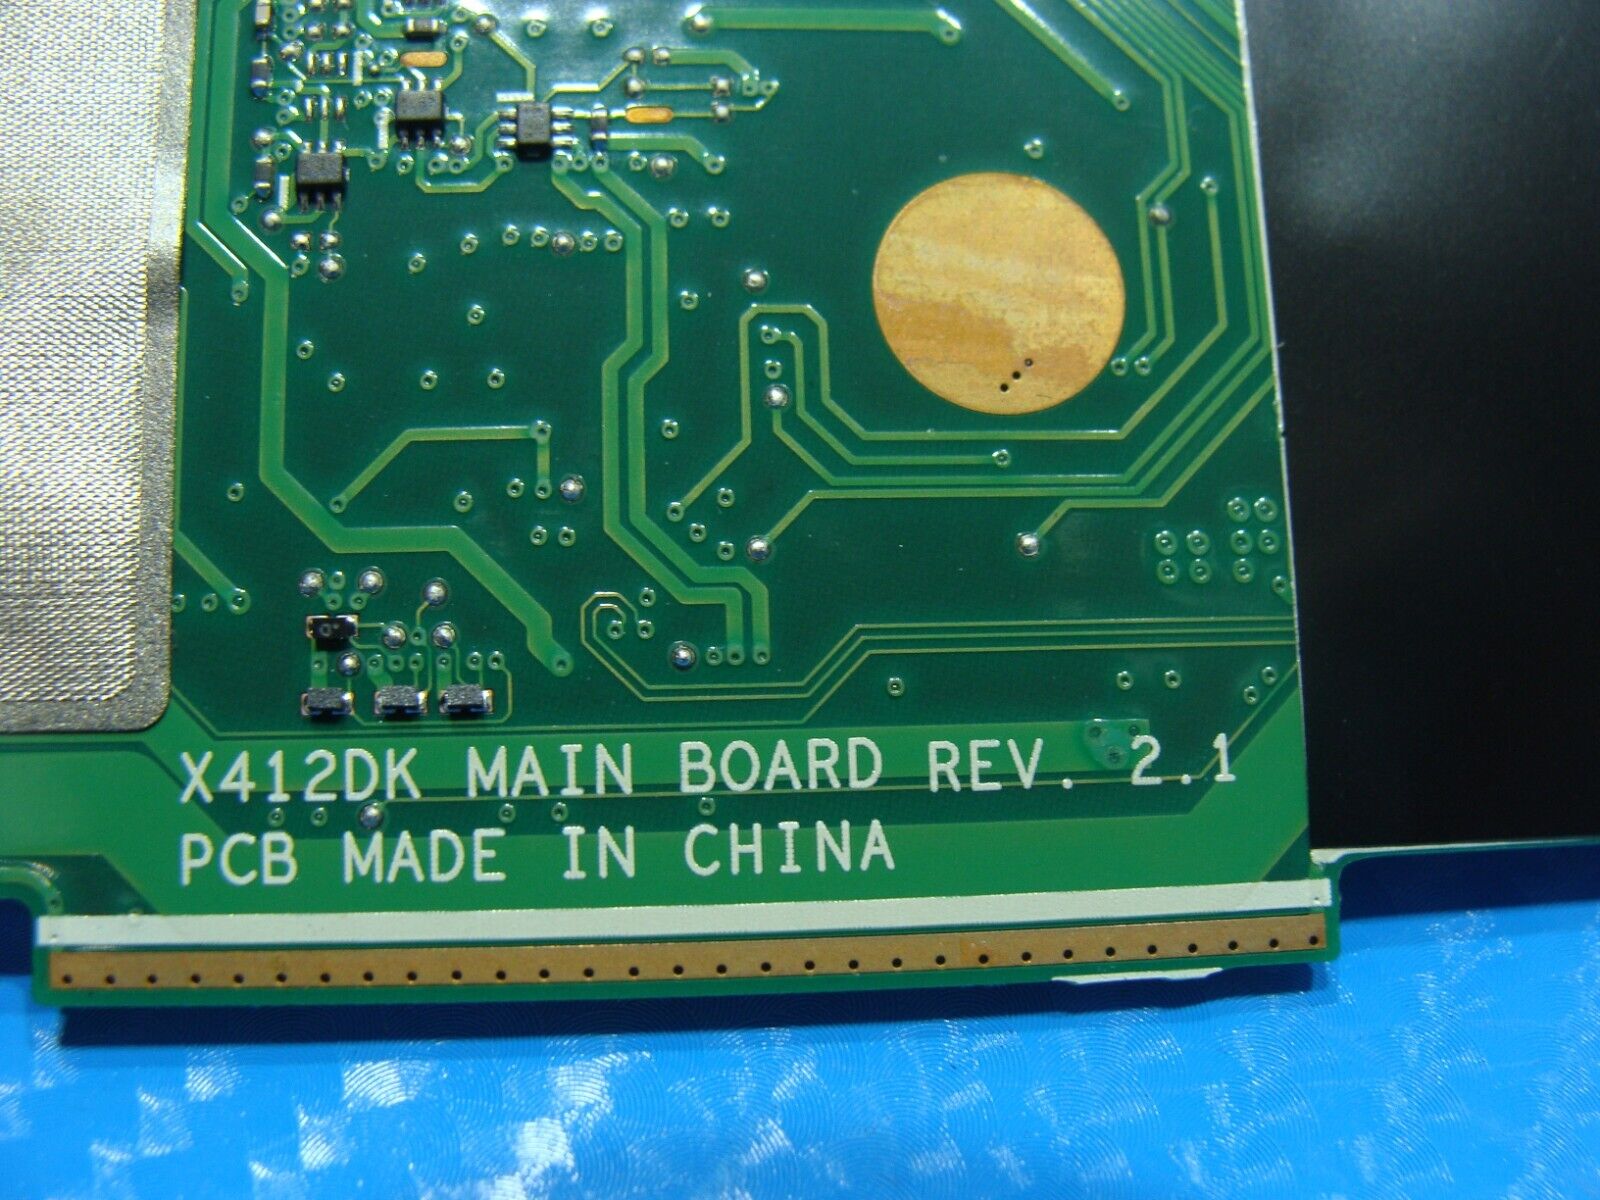 Asus VivoBook 14” 14 OEM AMD Ryzen 3 3250u 2.6GHz Motherboard 60NB0M50-MB5100